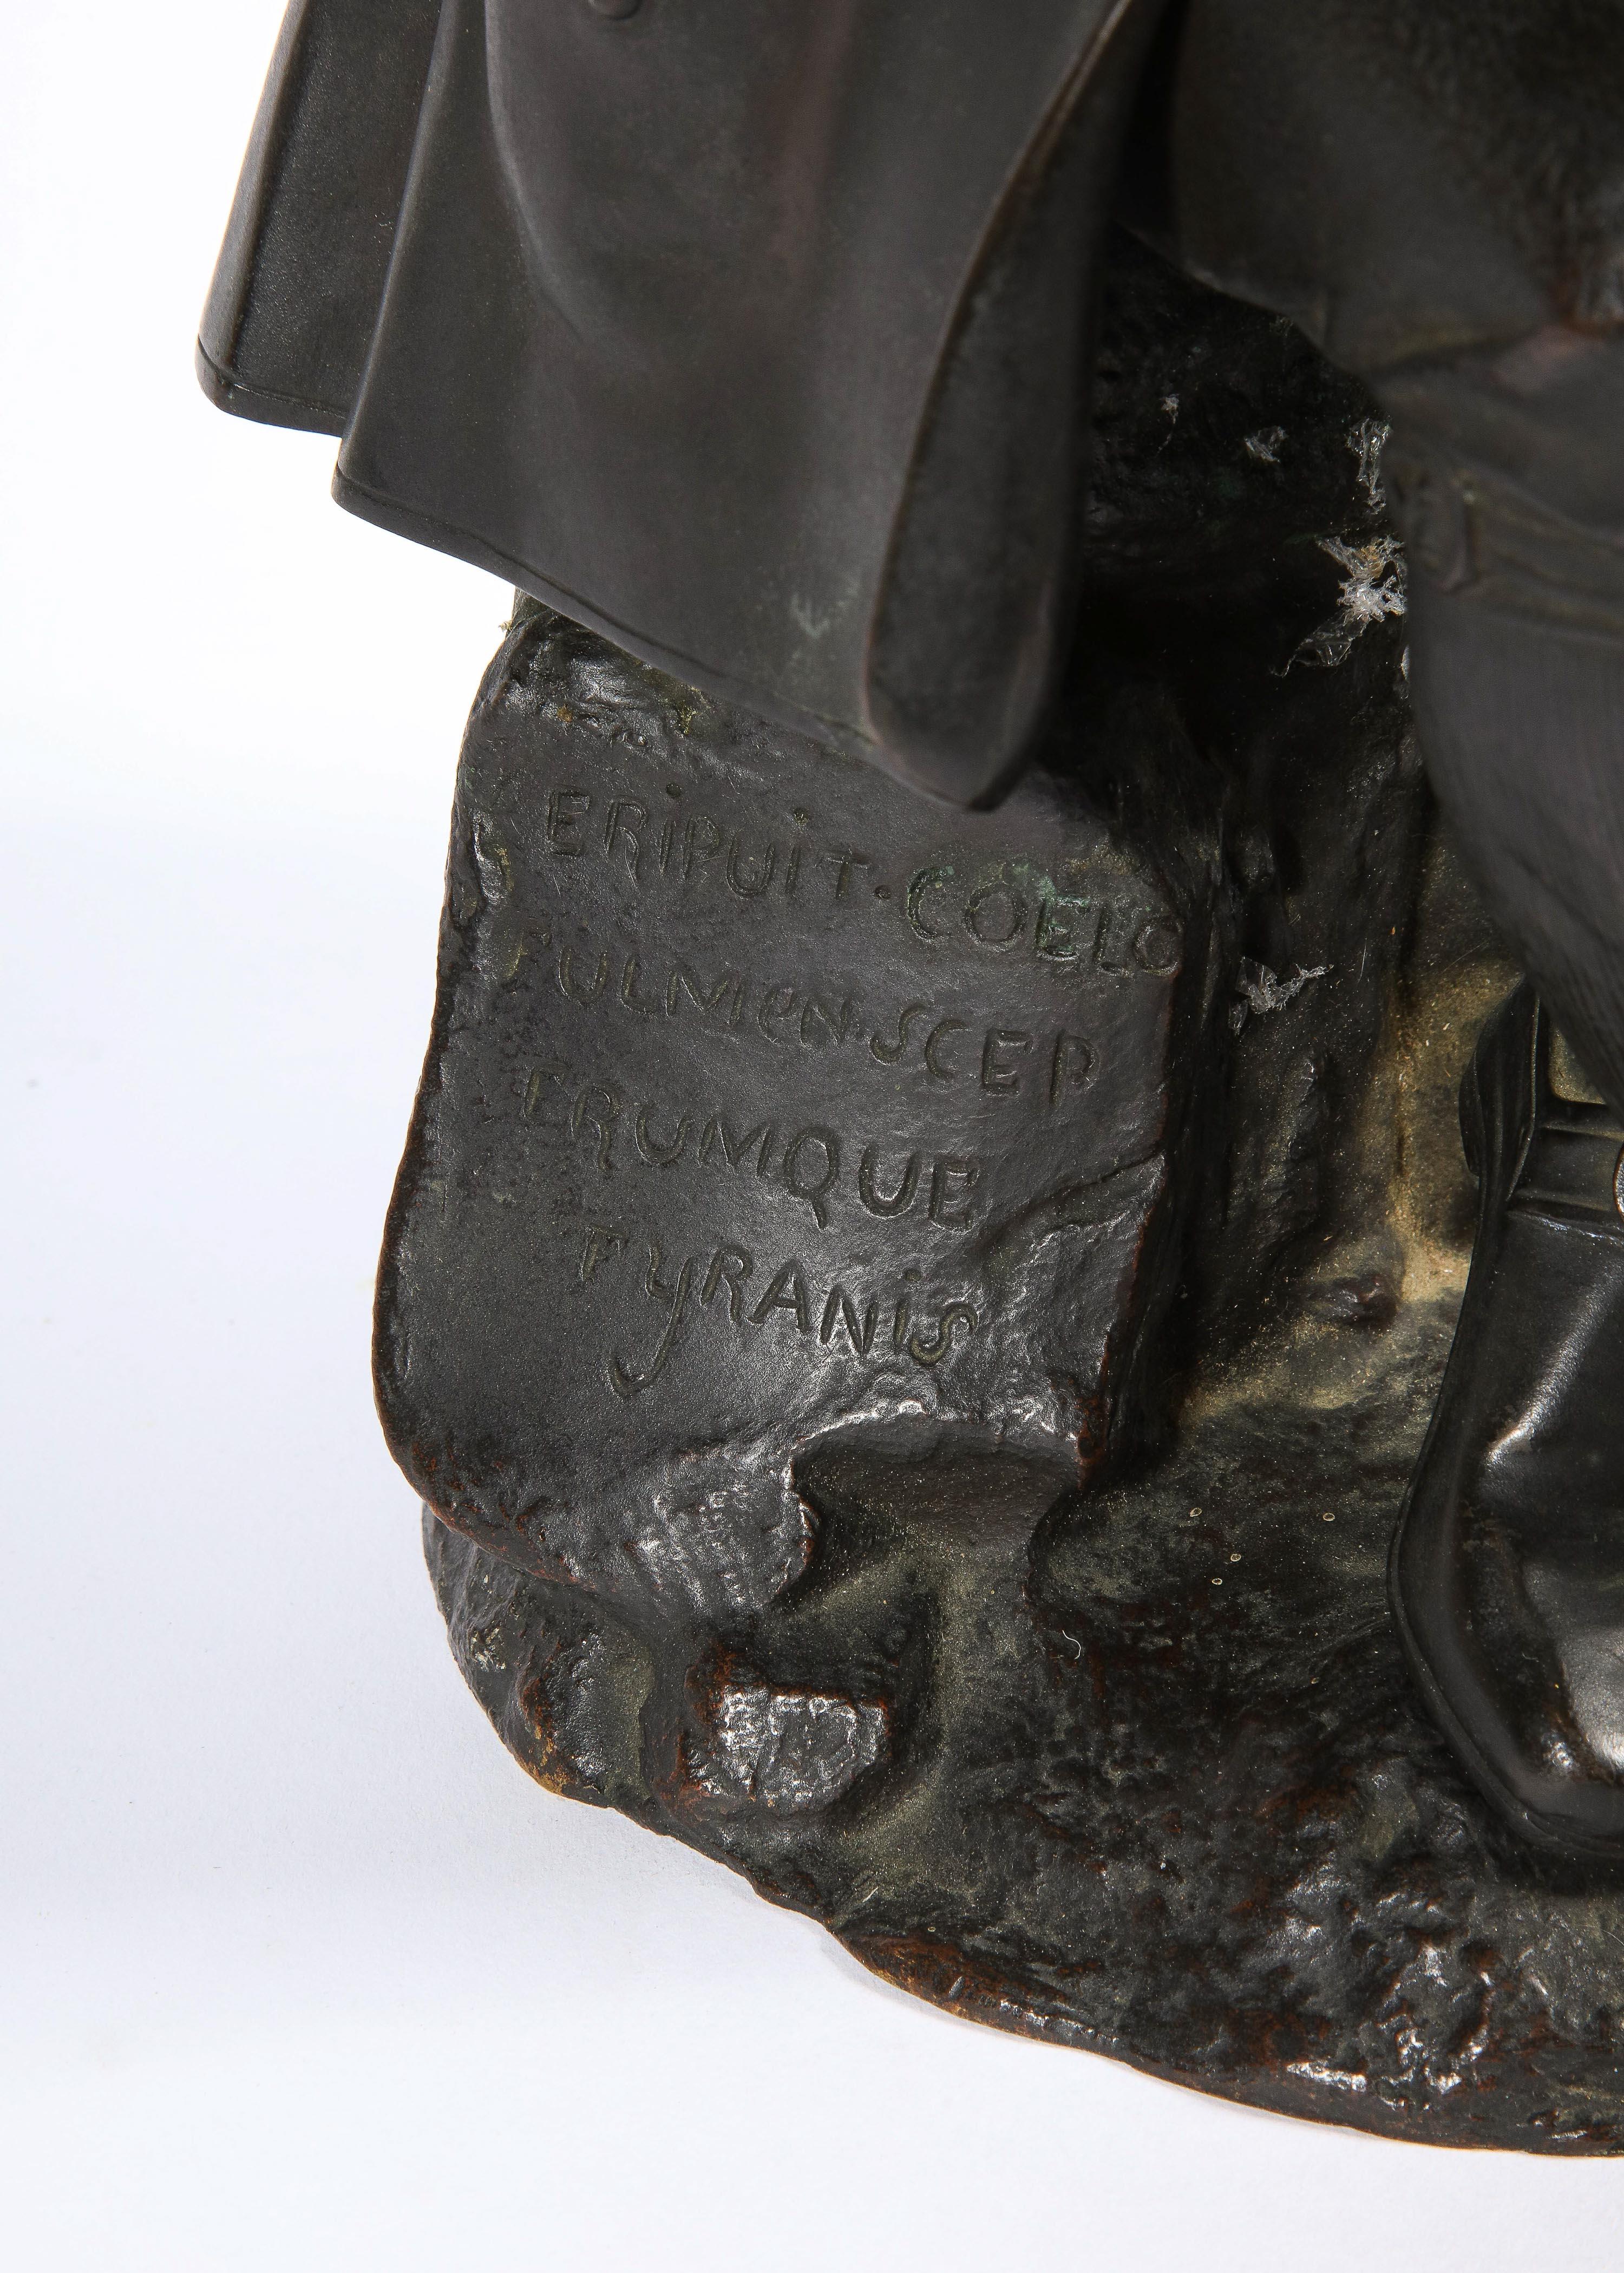 Albert-Ernest Carrier-Belleuse (France, 1824-1887)

Une rare statue en bronze assis de Benjamin Franklin tenant sa canne et son chapeau, avec un livre dans sa poche droite portant l'inscription « Science ».

La base porte l'inscription « Eripuit